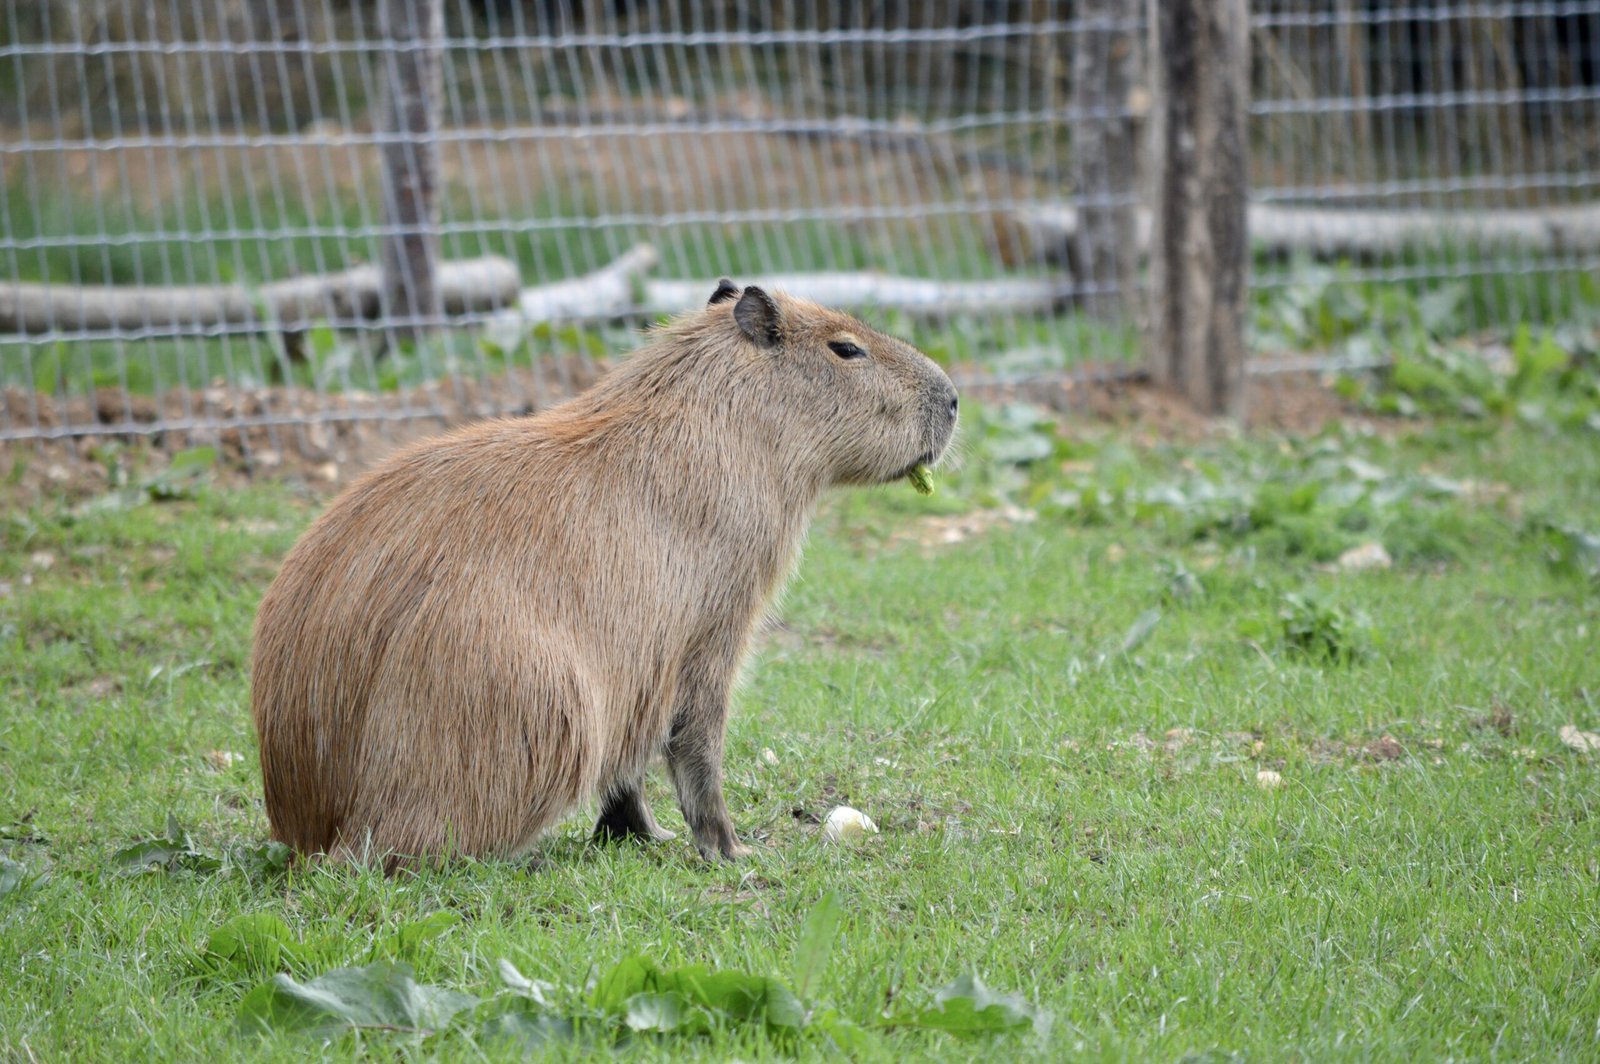 Adorable Images of a Capybara